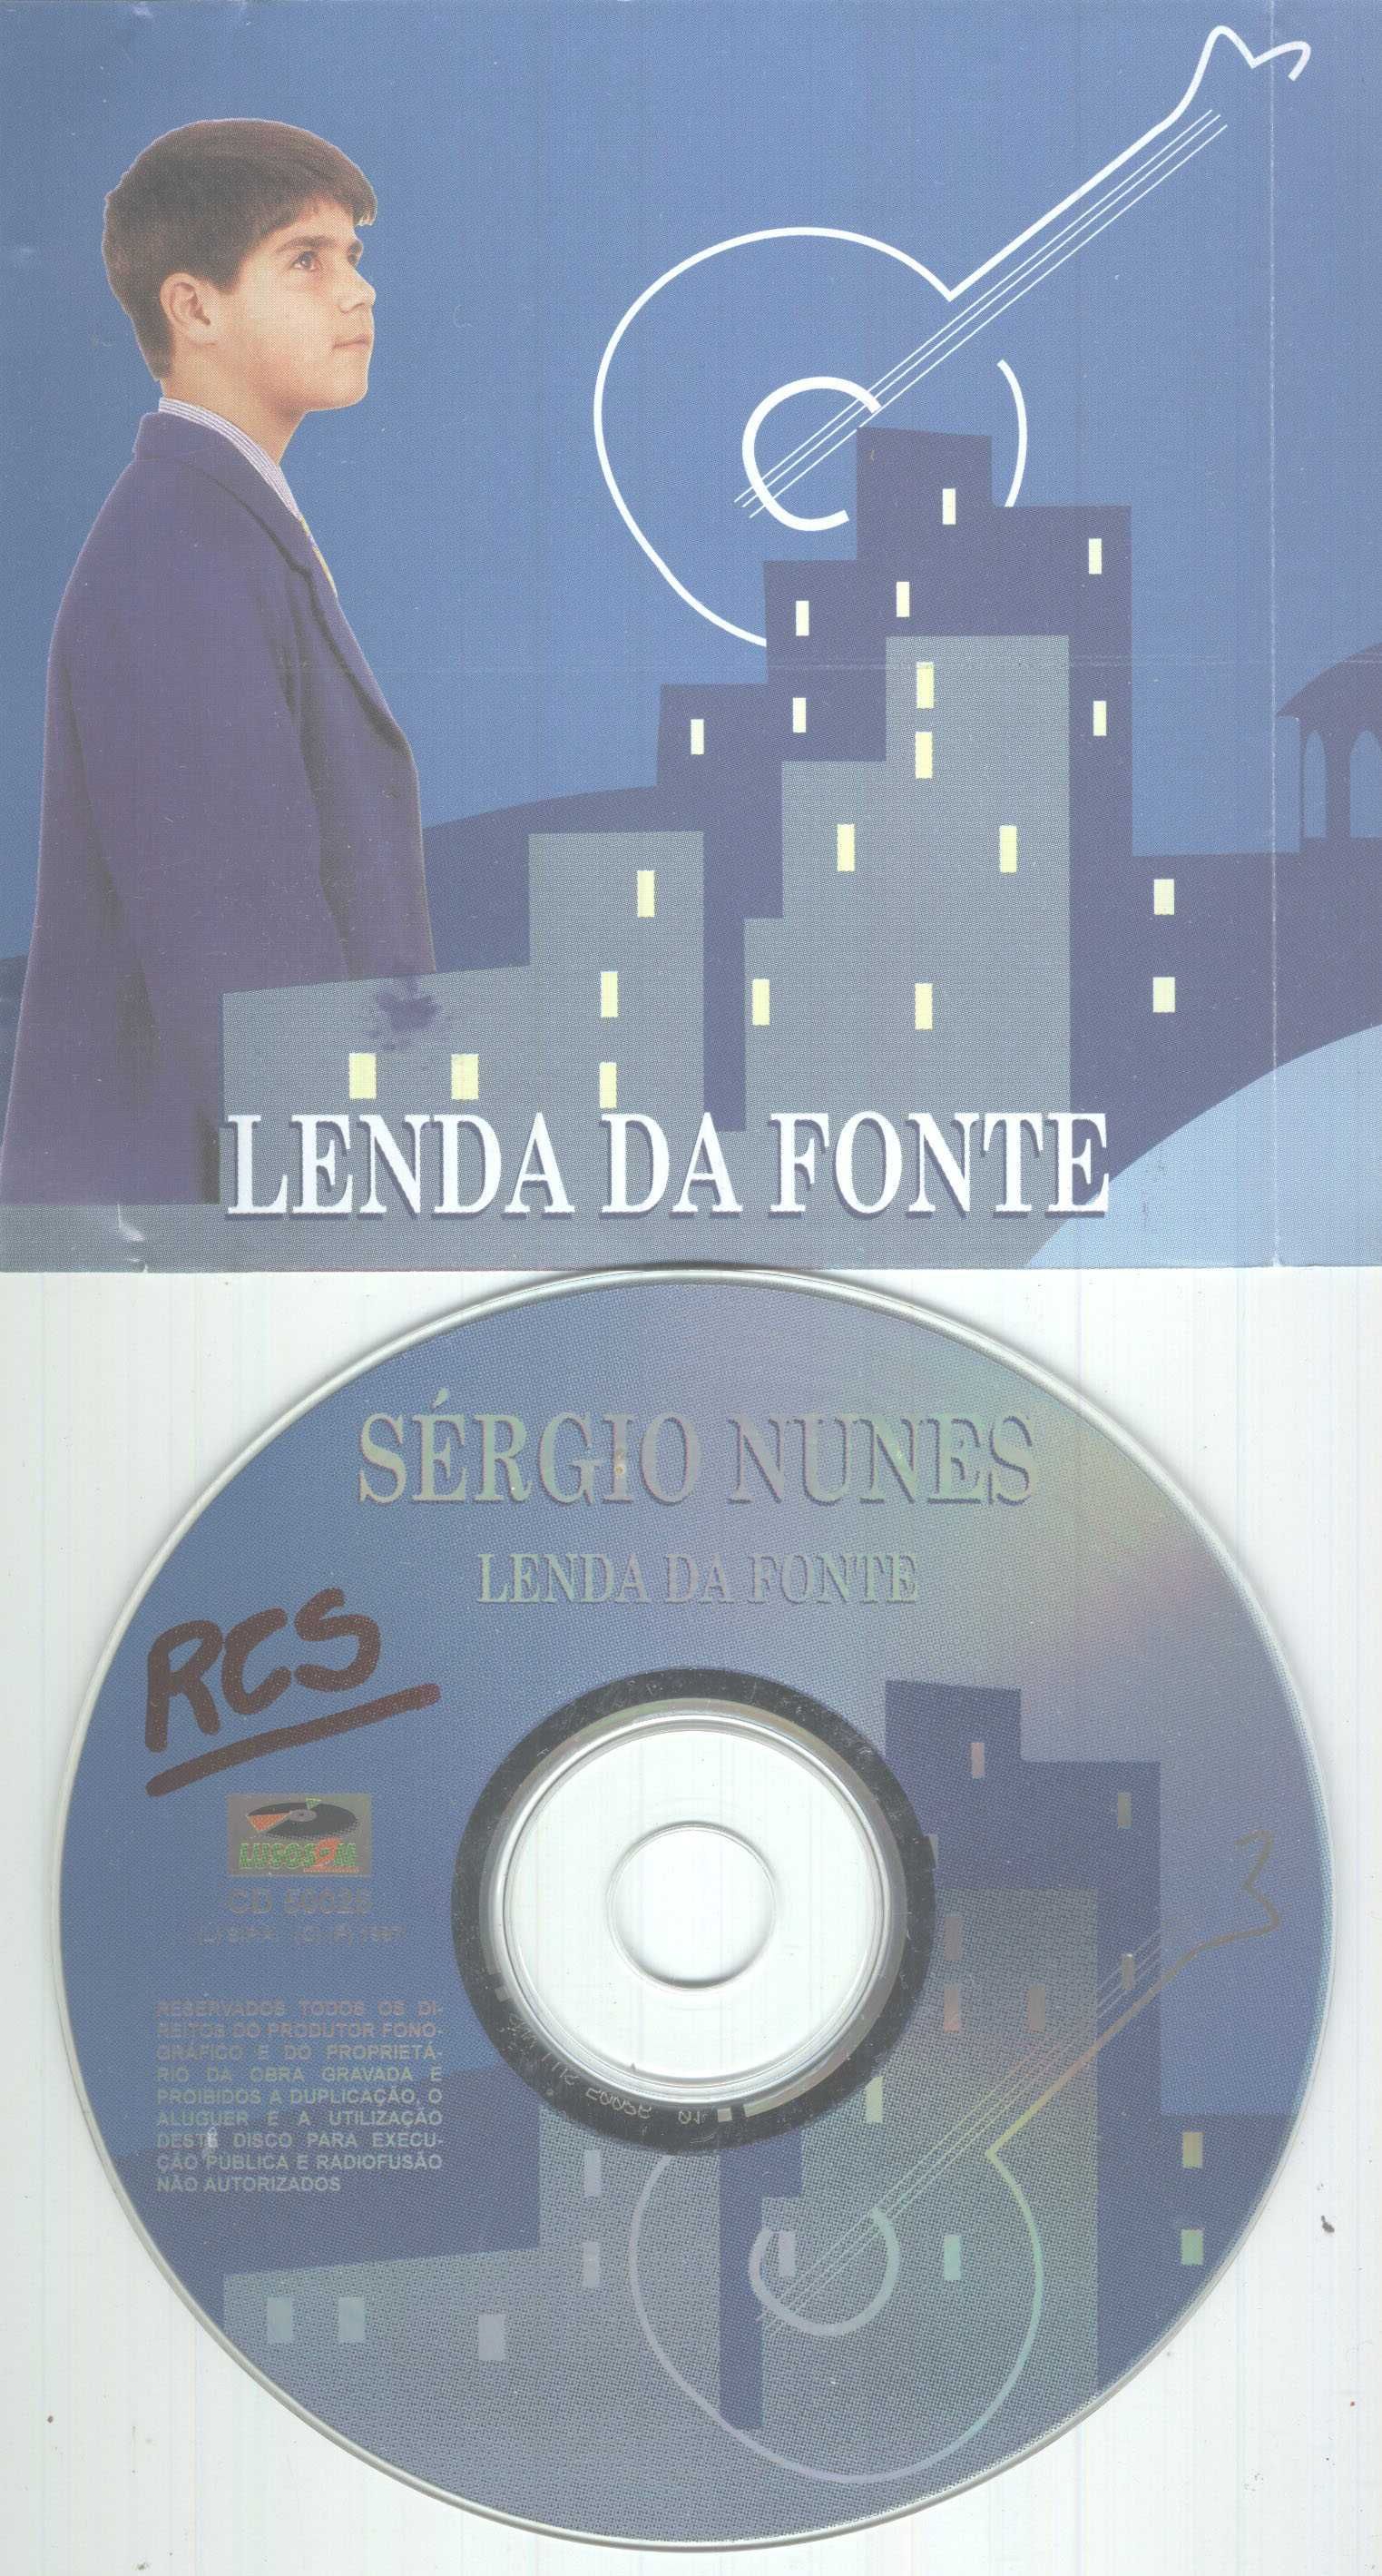 Sérgio Nunes Lenda da Fonte CD